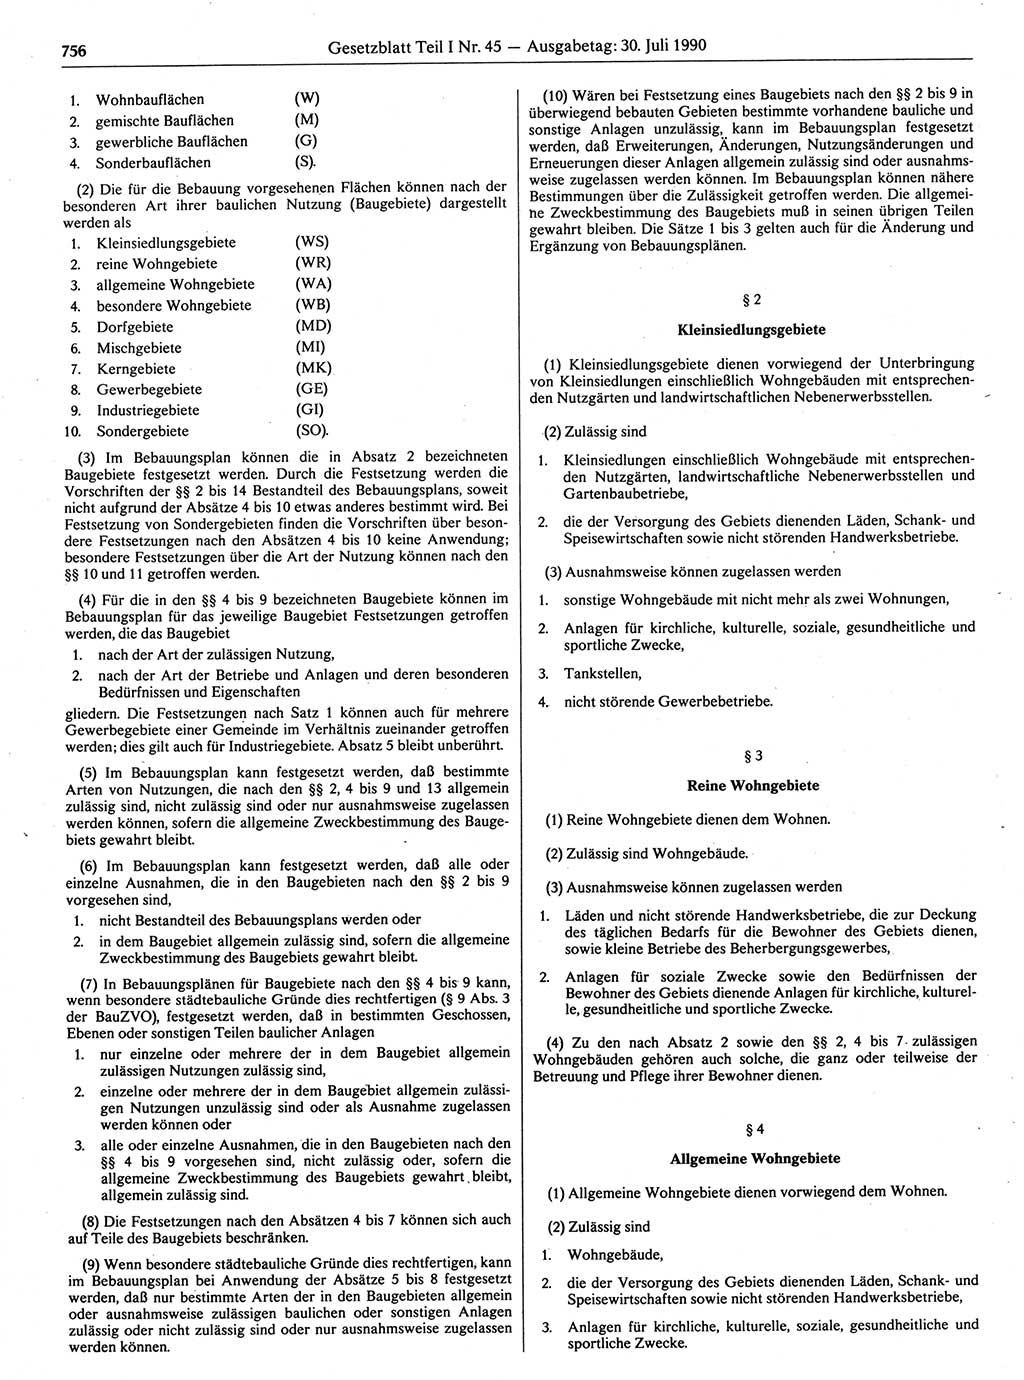 Gesetzblatt (GBl.) der Deutschen Demokratischen Republik (DDR) Teil Ⅰ 1990, Seite 756 (GBl. DDR Ⅰ 1990, S. 756)